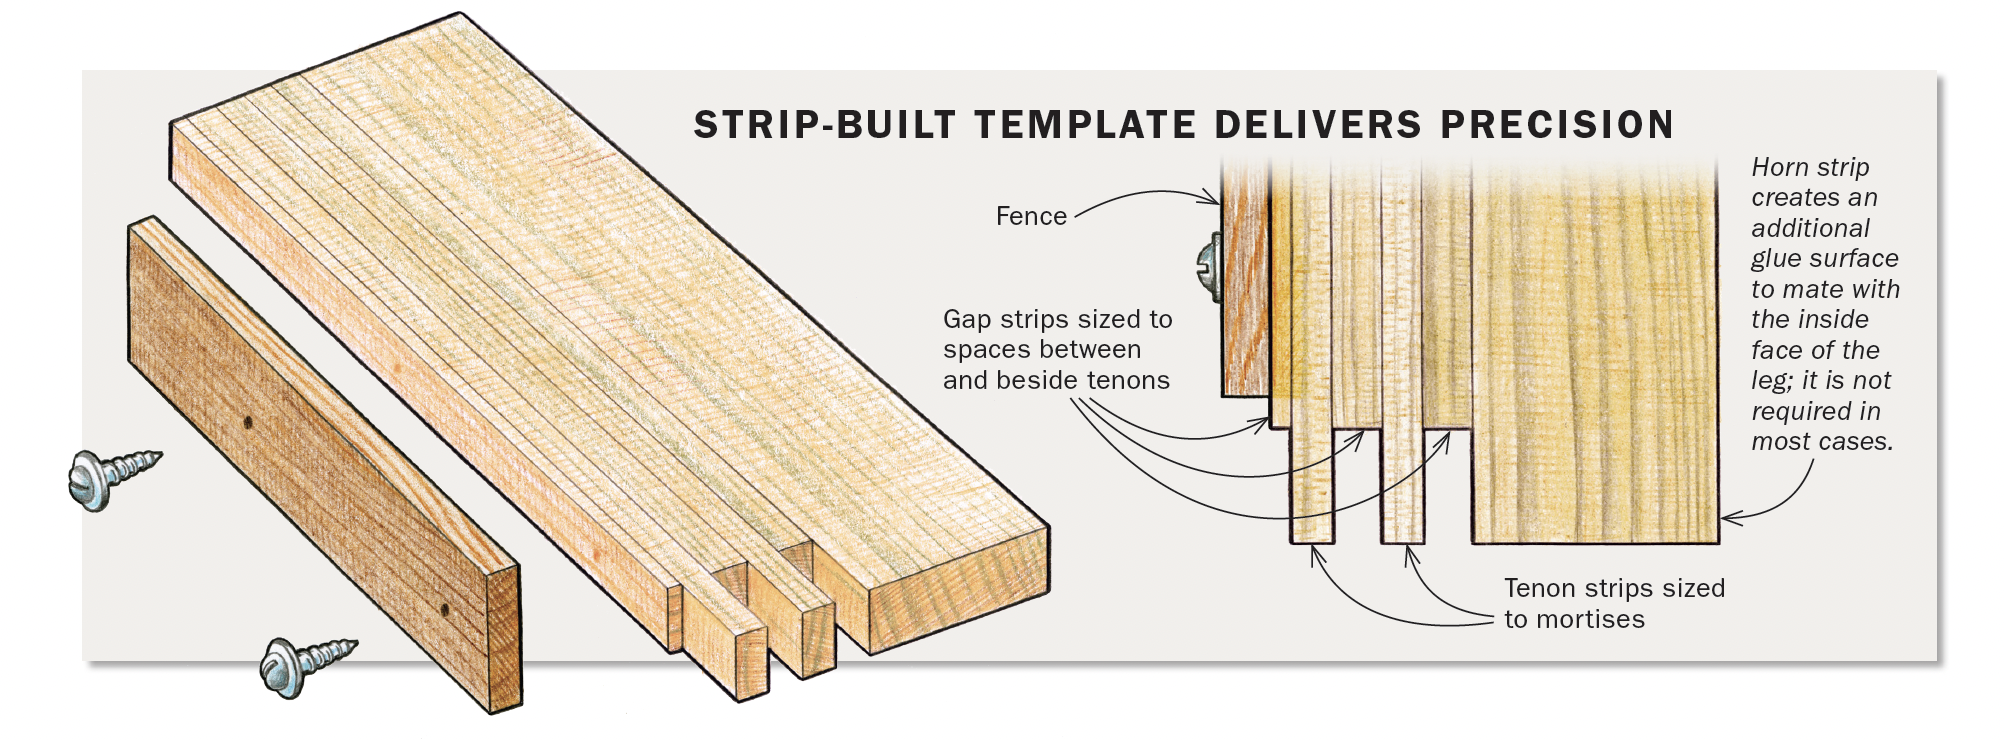 Strip-built template delivers precision